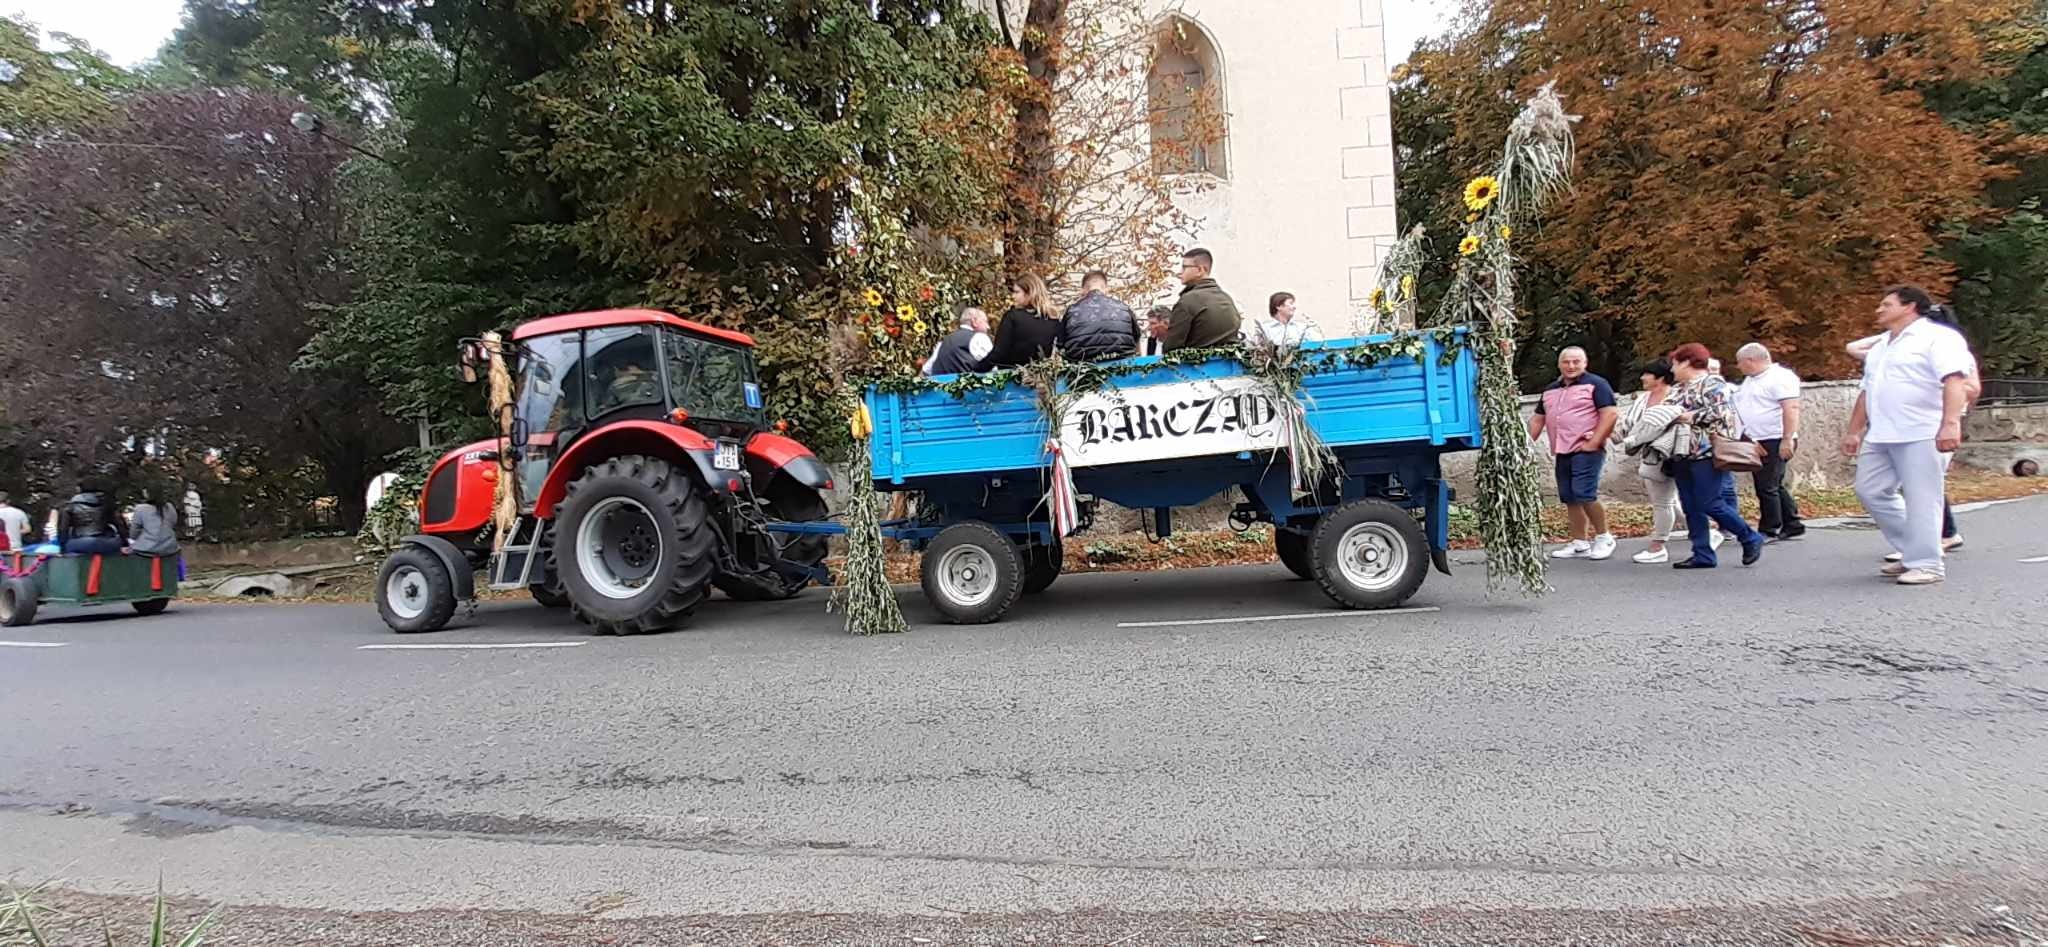 Egy piros traktor húz egy kék, virágokkal és zölddel díszített pótkocsit, amelyen több ember ül és áll. Az előzetesen lévő transzparens „Ranica” felirattal. A bámészkodók a közelben, az utcán állnak, fákkal és egy épülettel a háttérben.